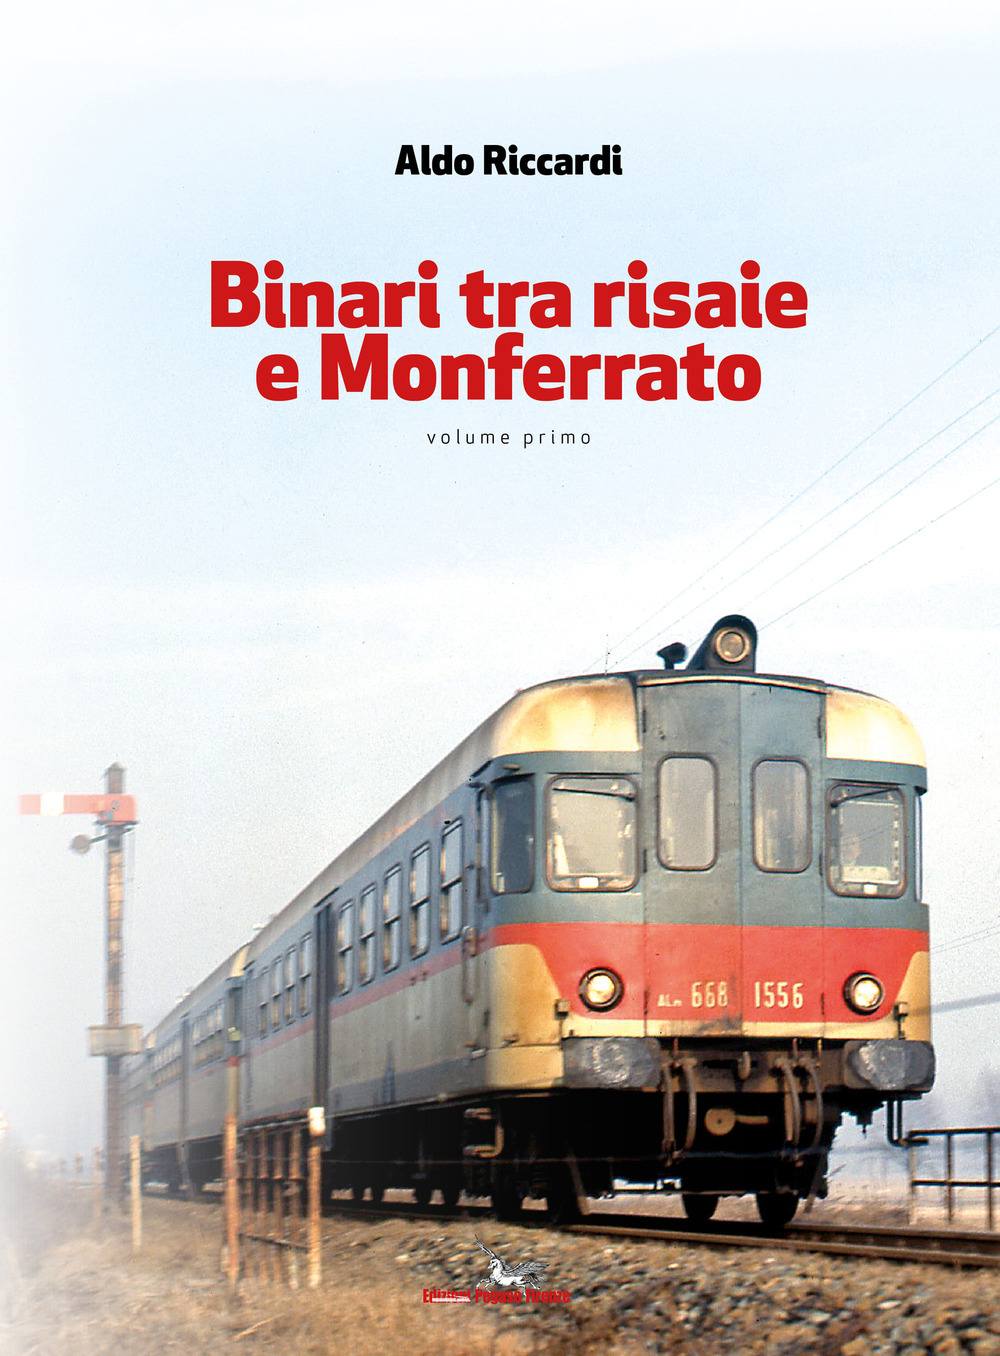 Libri Aldo Riccardi - Binari Tra Risaie E Monferrato Vol 01 NUOVO SIGILLATO, EDIZIONE DEL 05/07/2019 SUBITO DISPONIBILE